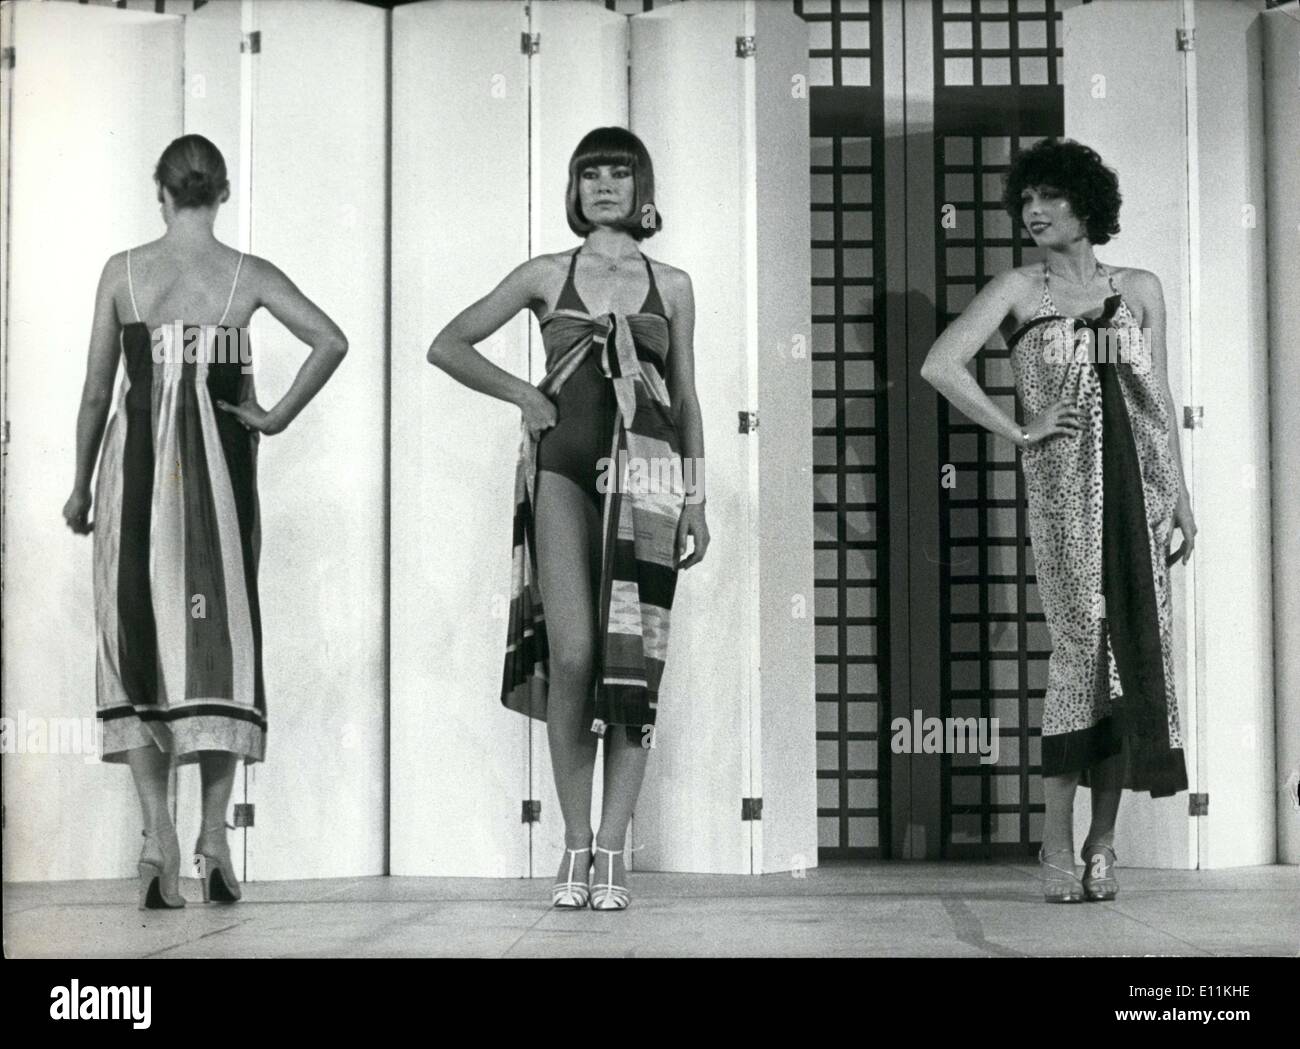 El 10 de octubre, 1978 - Spimbi es un fashion week celebrada en Mónaco, similar a la semana de la moda de Nueva York en los Estados Unidos. Los mejores y más recientes diseños son destacados. Foto de stock